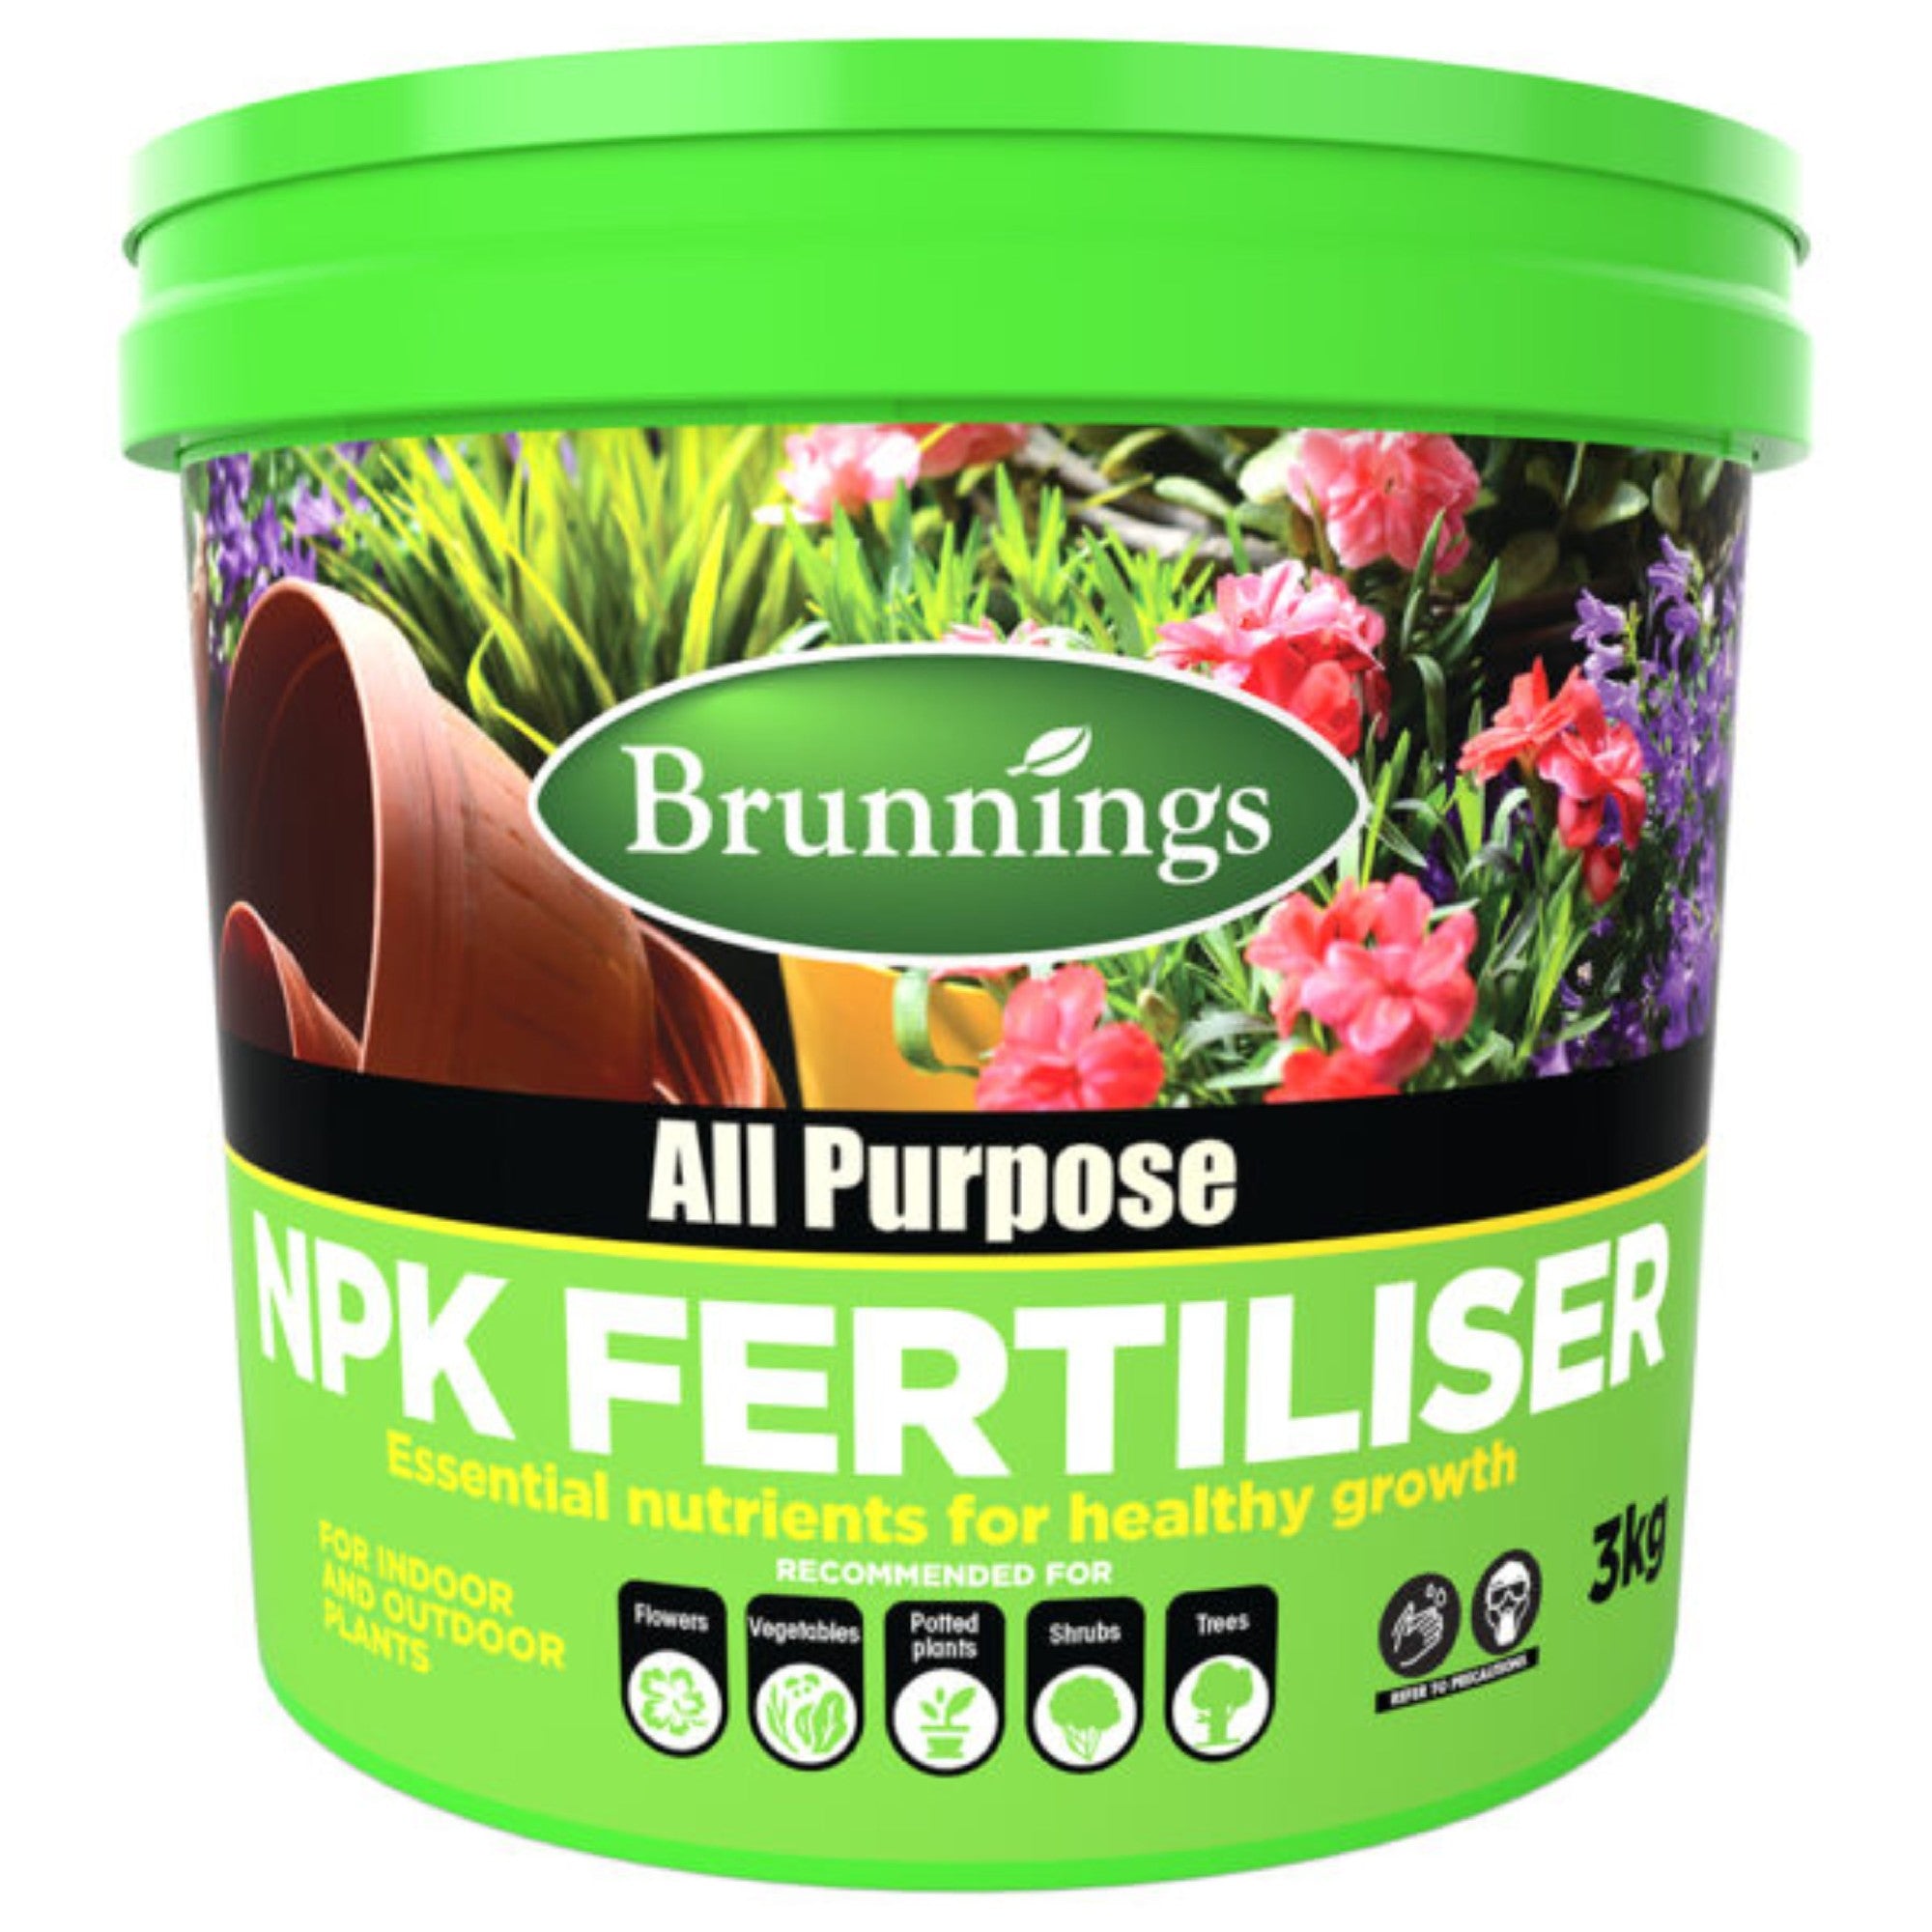 All Purpose Npk Fertiliser 3kg